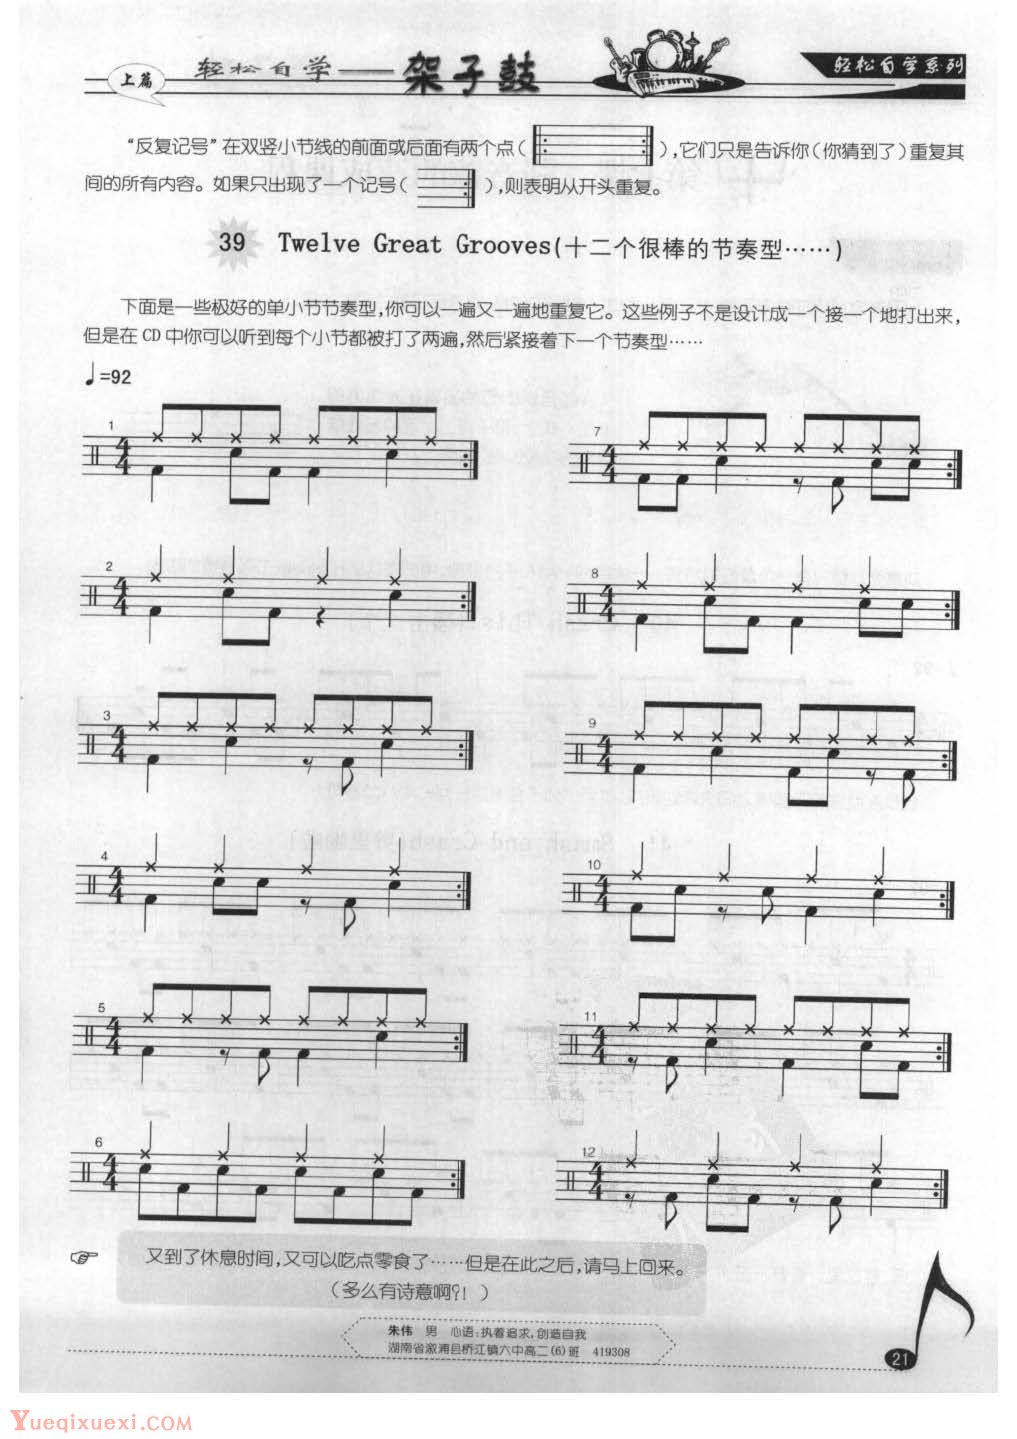 轻松自学架子鼓[上篇]第六课:八分音符节奏型